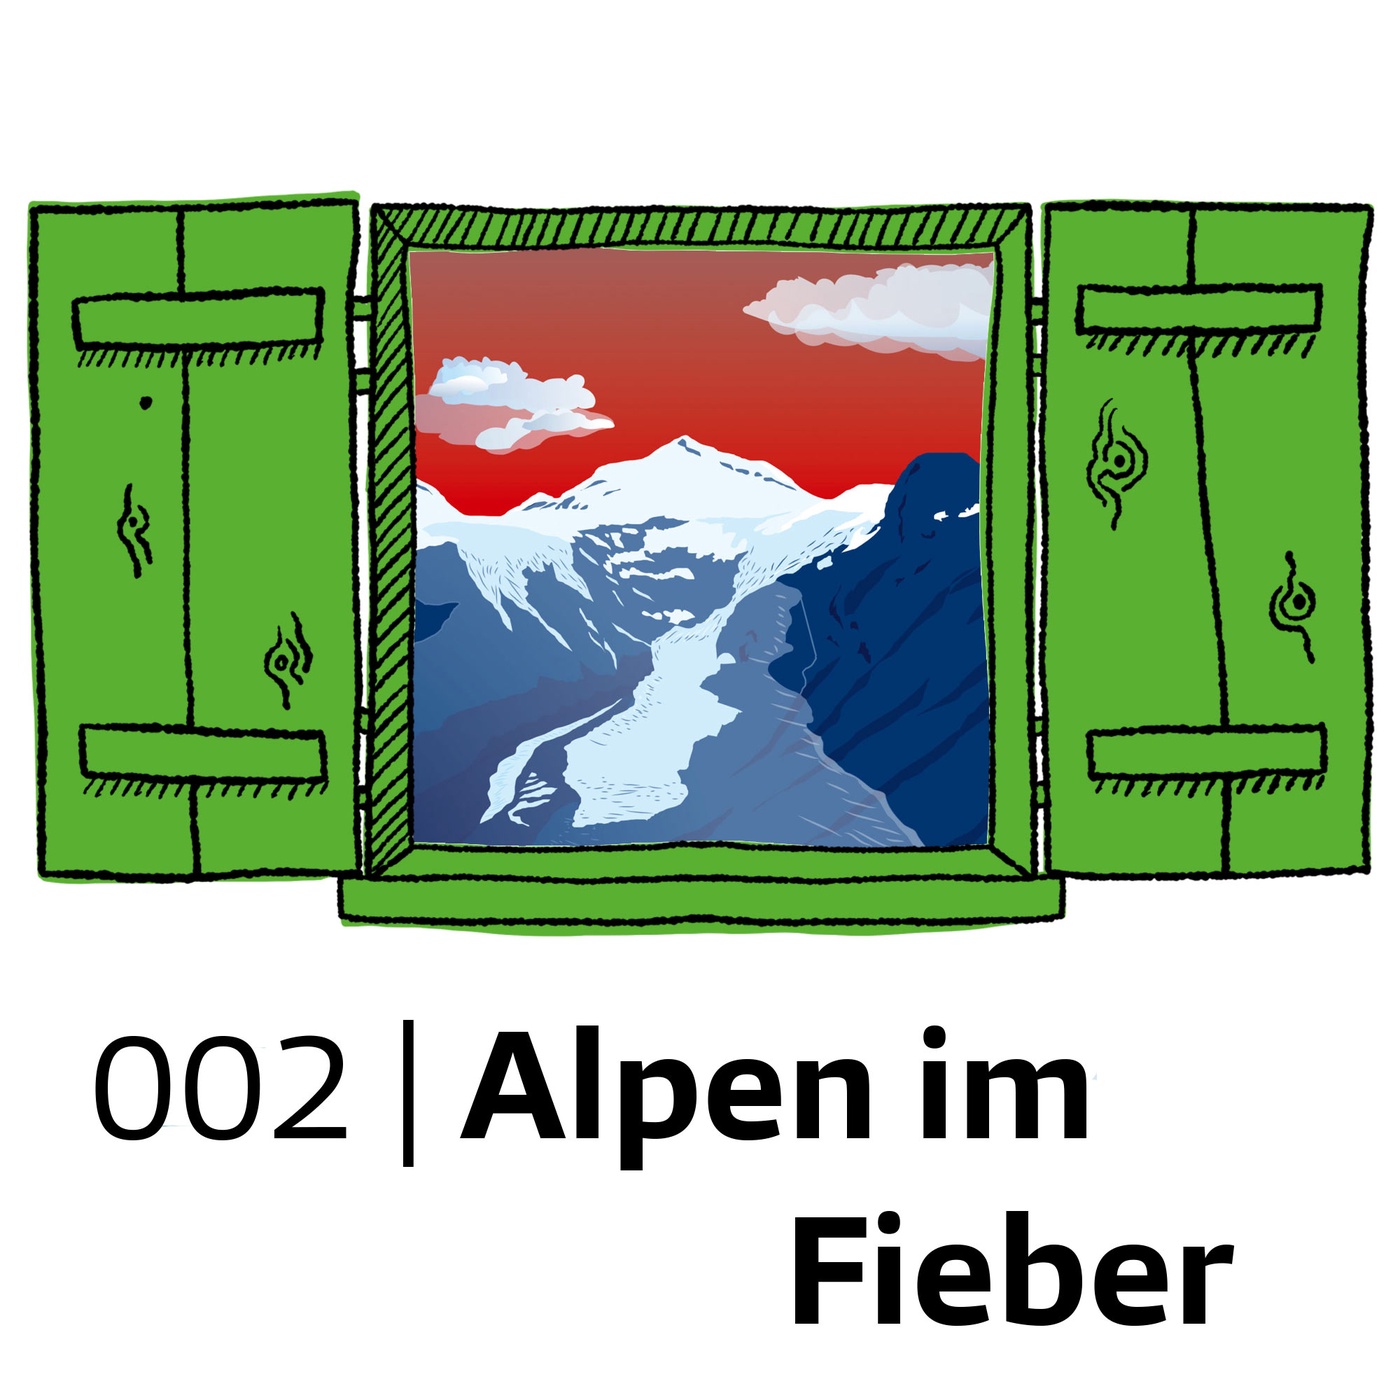 #002 Die Alpen im Fieber: Klimakrise trifft Berge